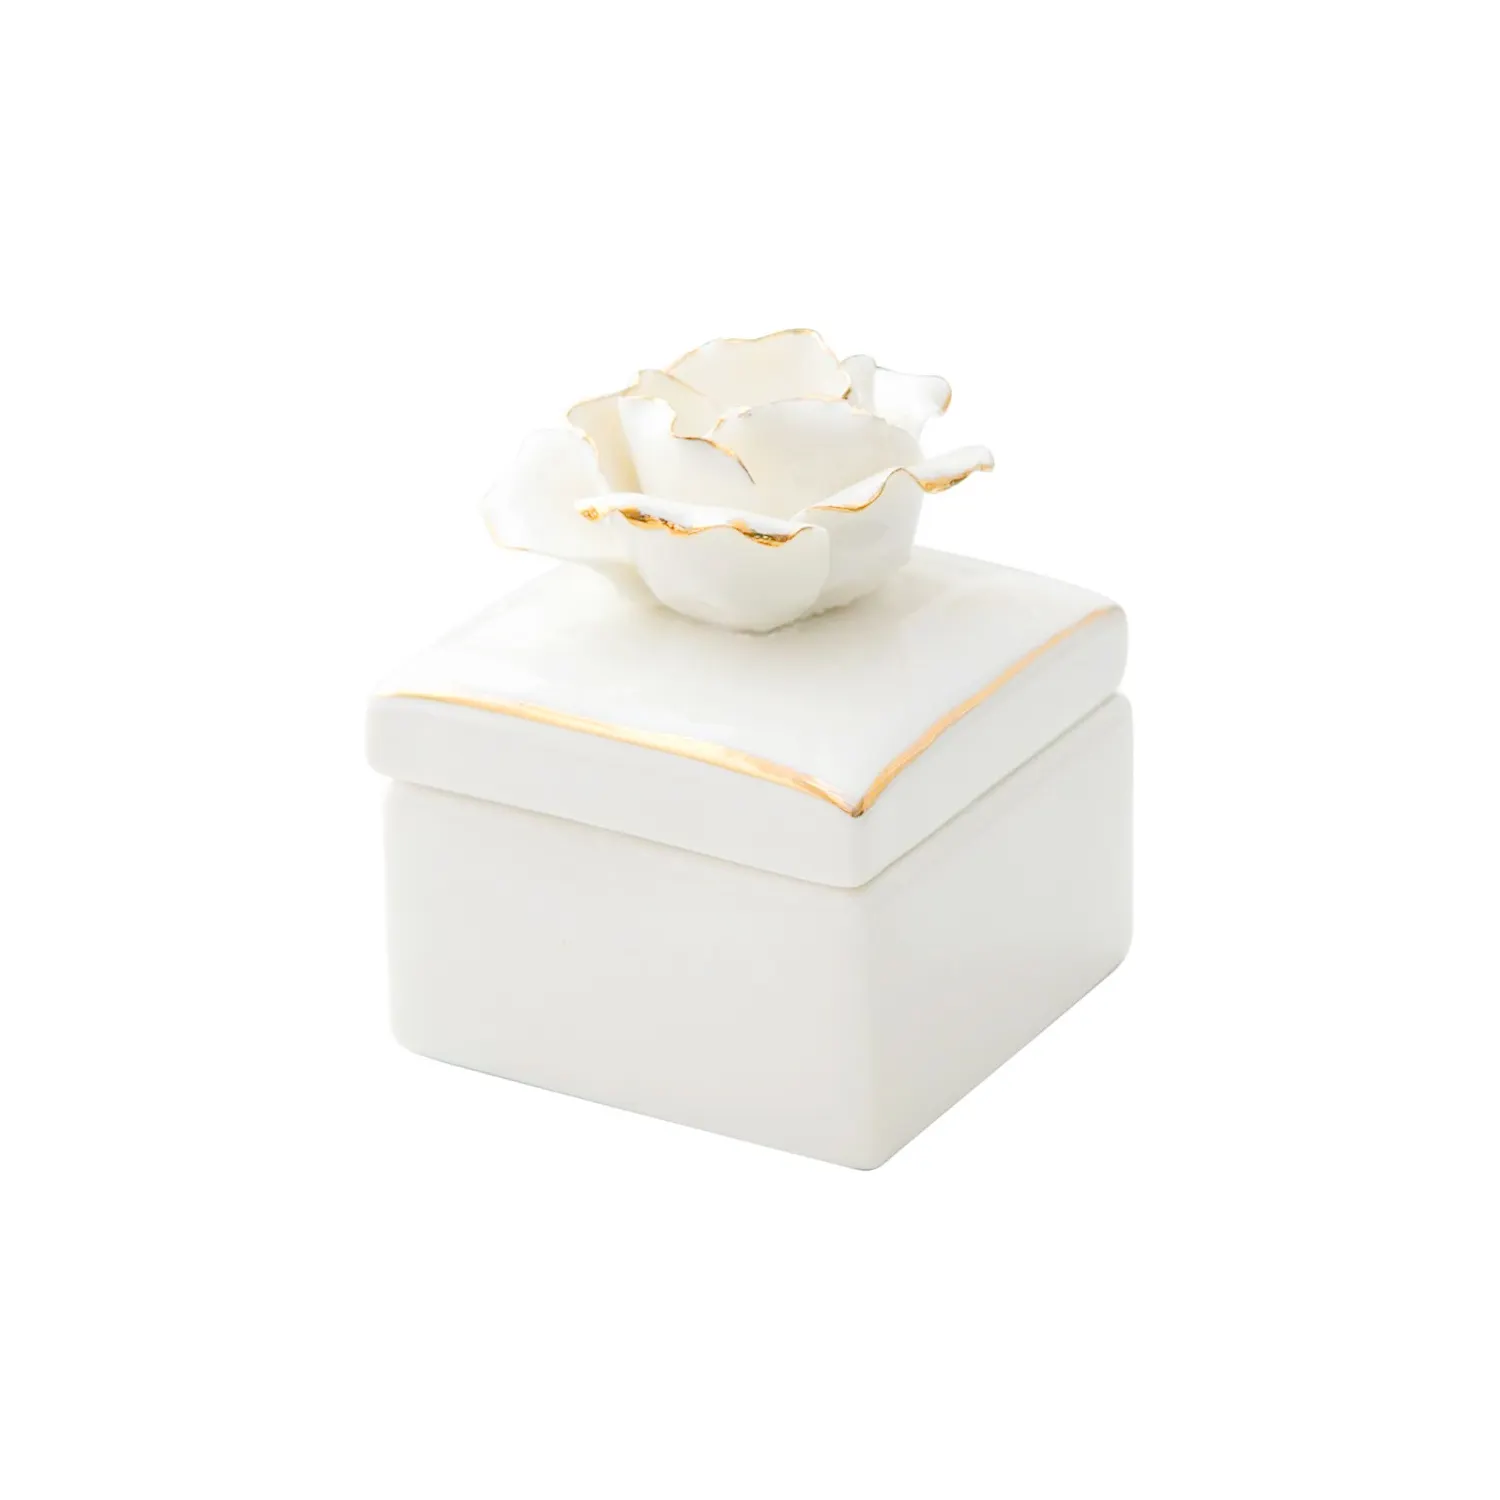 De cerámica blanca de joyería anillo joya caja con mano Gild borde Flor de cerámica tapa para el aniversario de boda